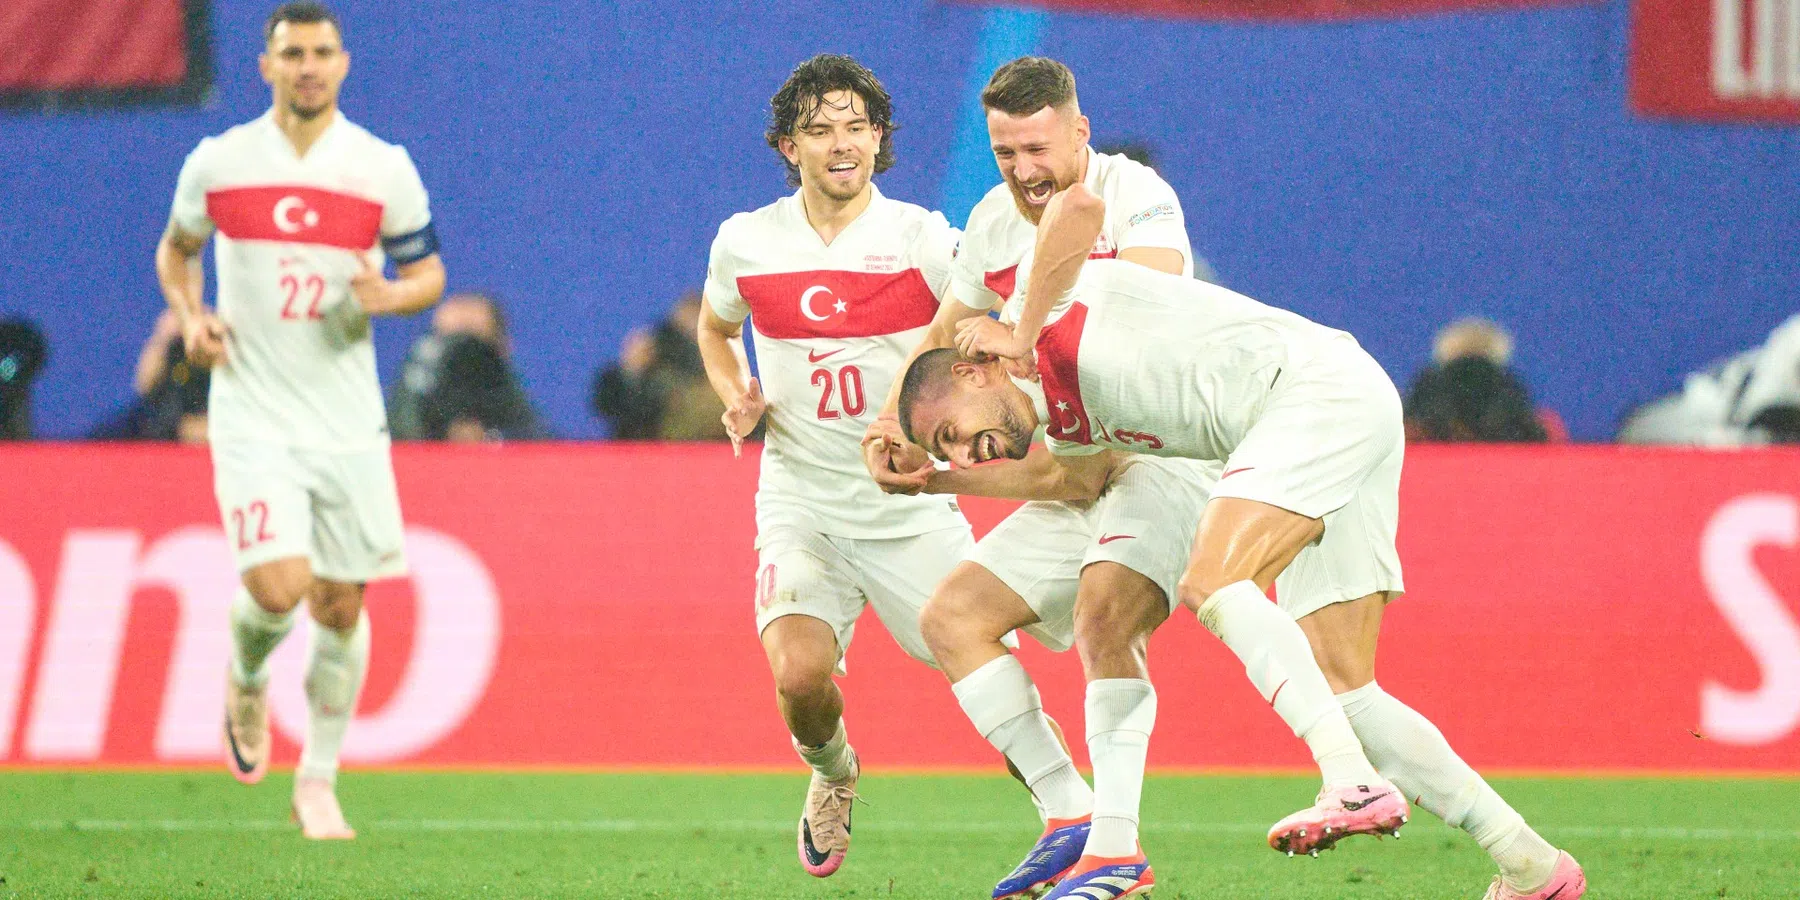 Hoe verliepen de EK-kwalificatie, oefenduels en EK-wedstrijden voor Turkije?